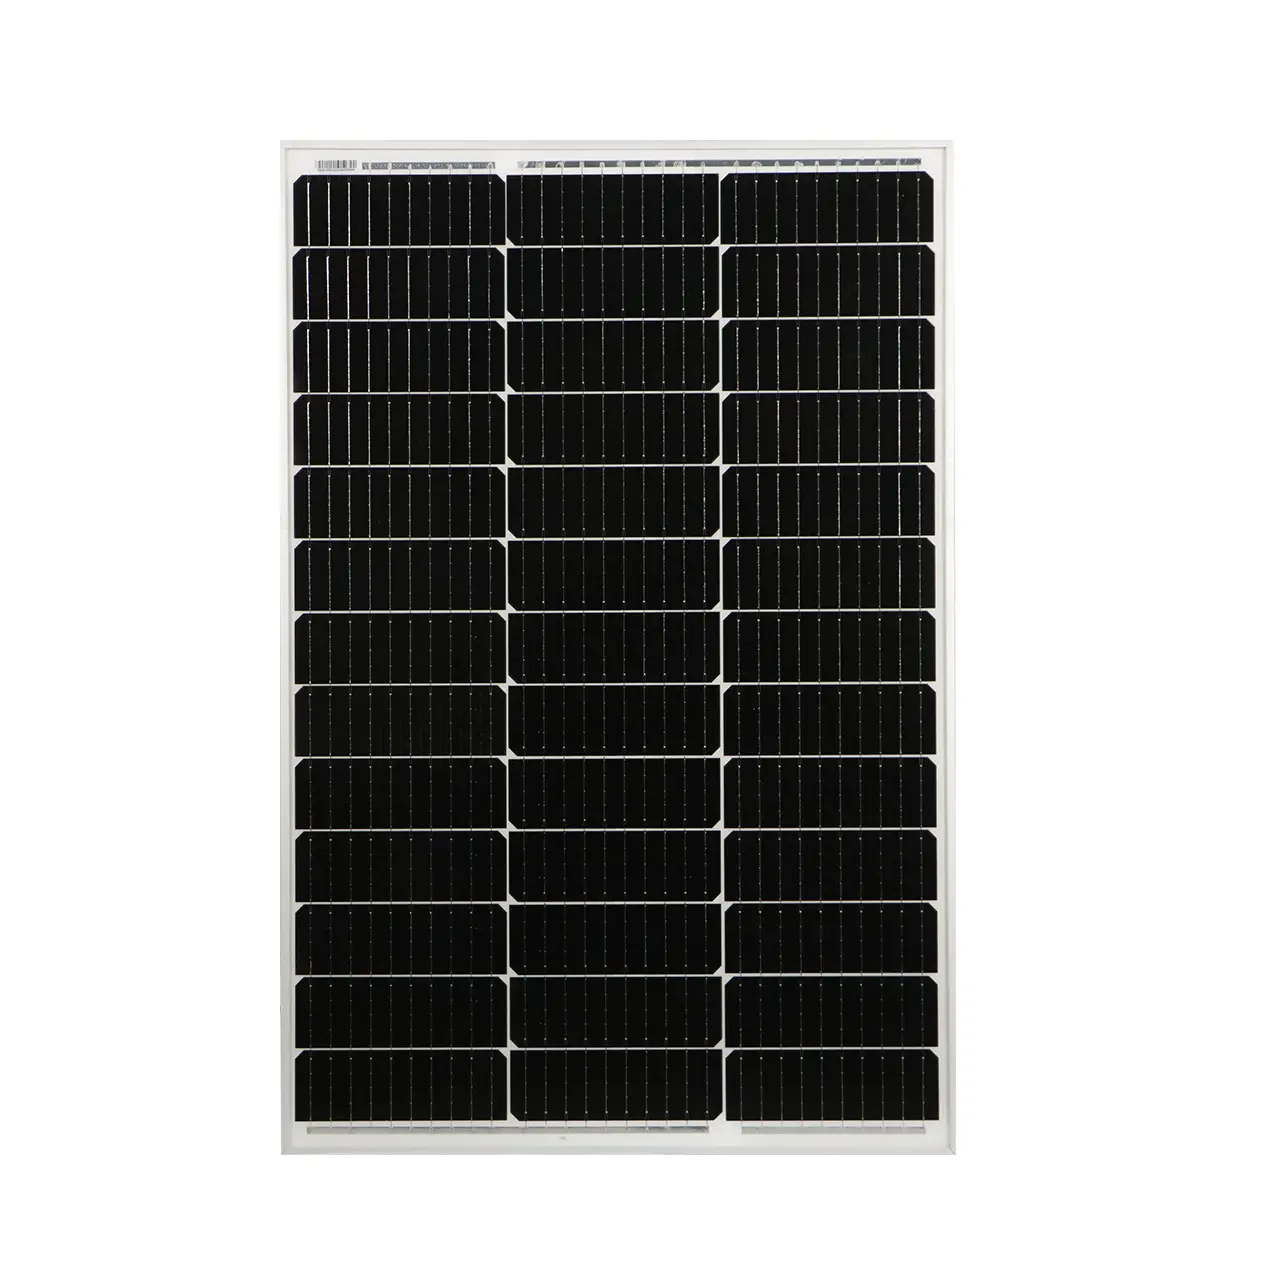 सौर ऊर्जा संयंत्र याशेल 400W/30A मोनोक्रिस्टल PWM देश के घर के लिए मोबाइल स्वायत्त सौर ऊर्जा संयंत्र